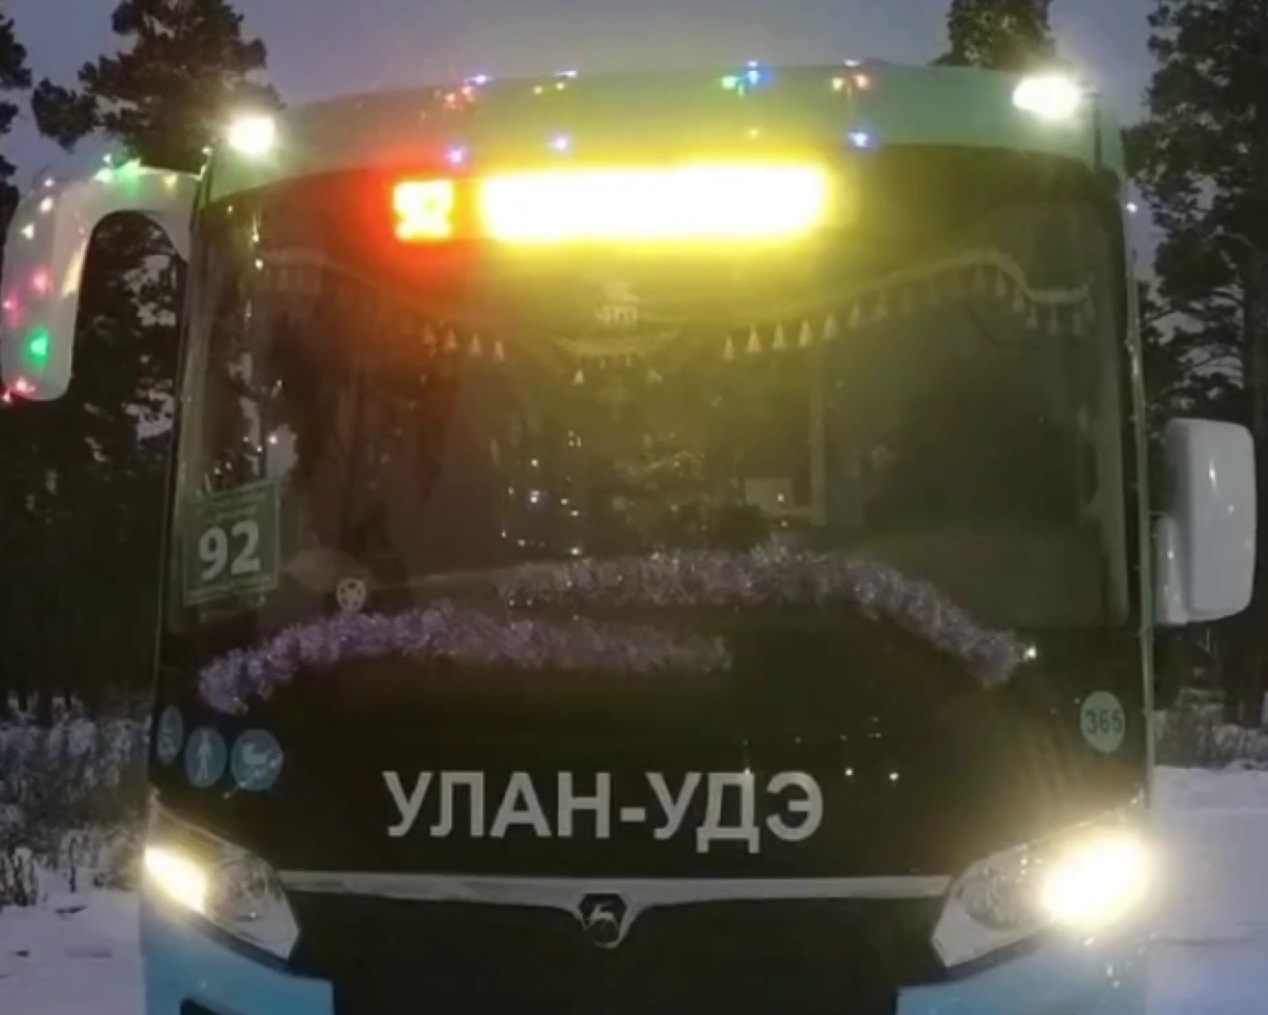 Фото Автобусы и трамваи Улан-Удэ в новогоднюю ночь будут работать бесплатно